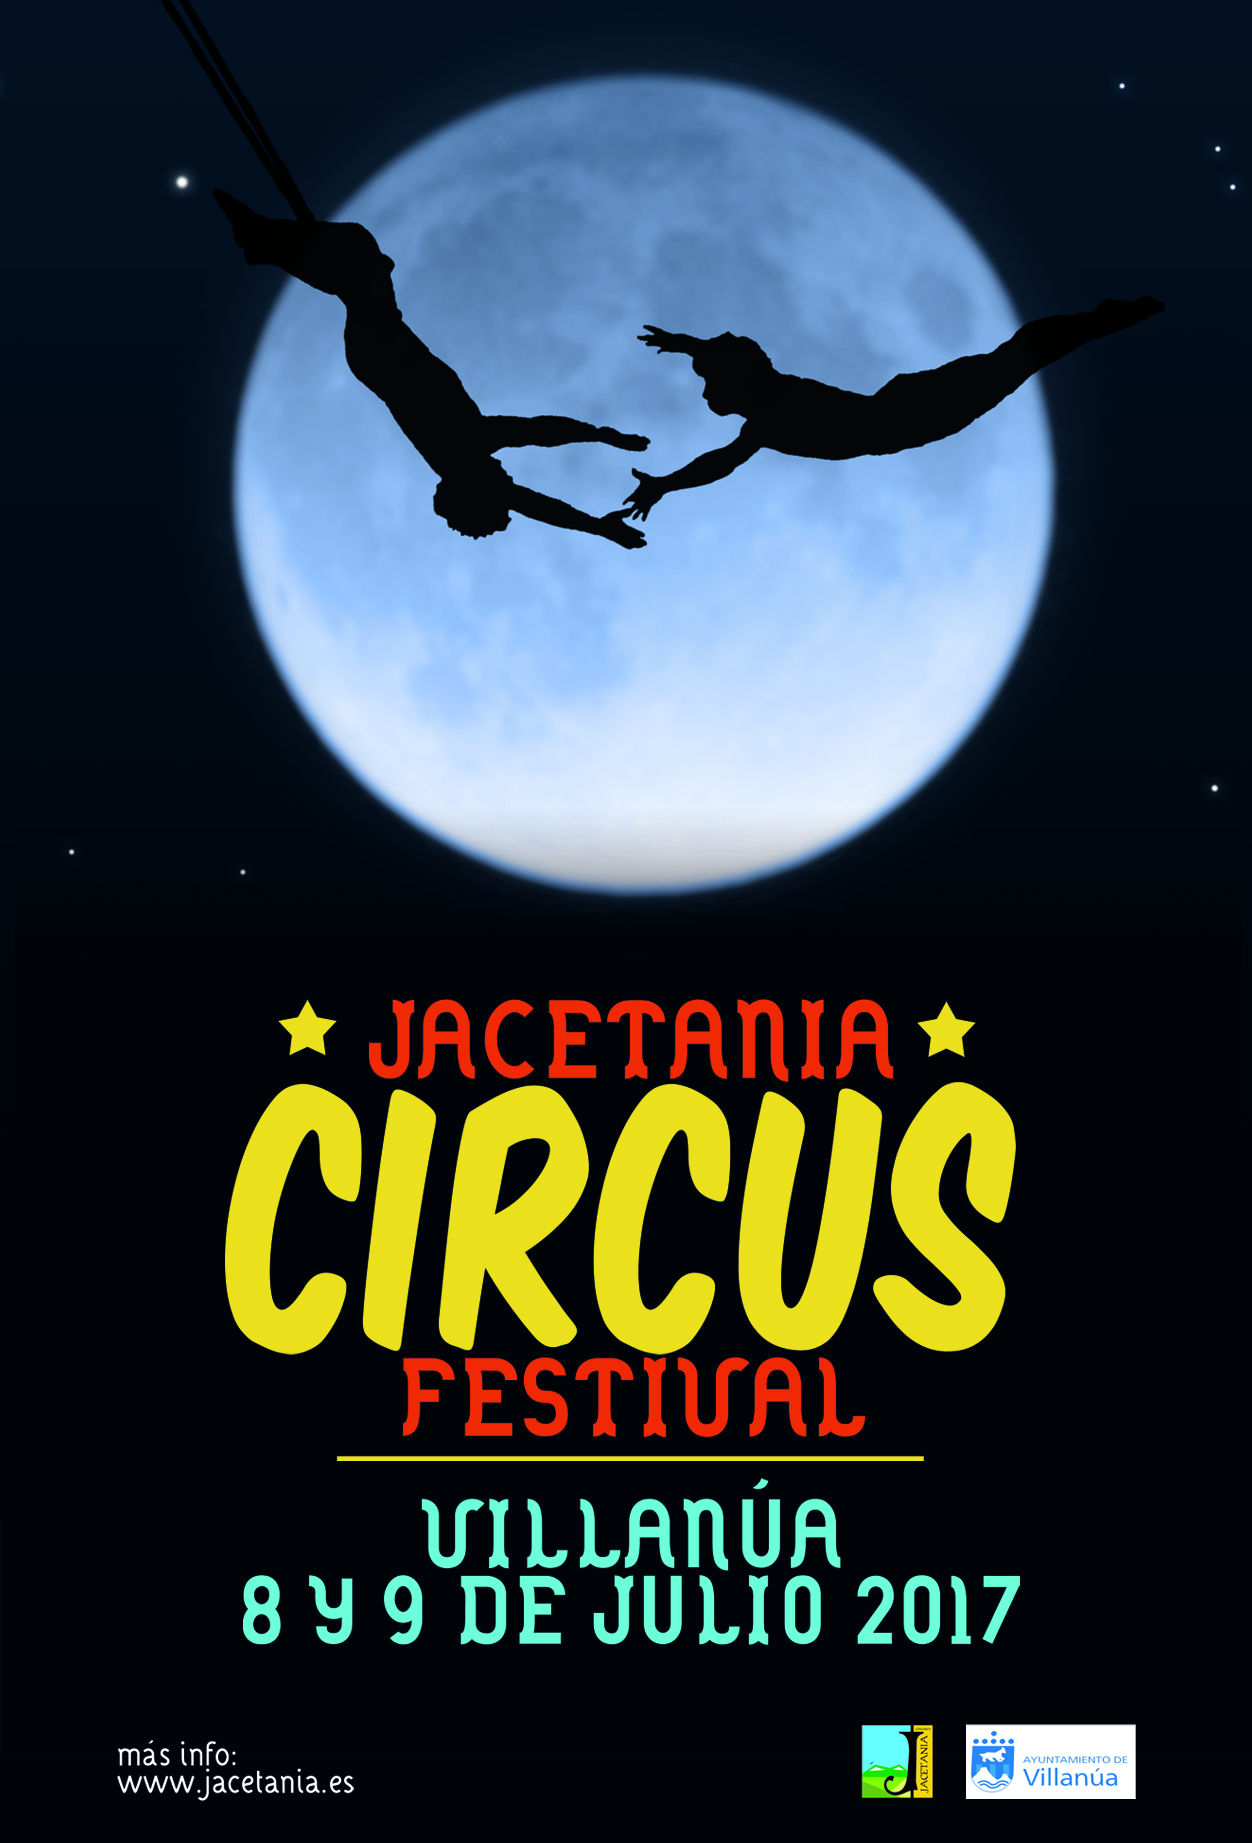 Jacetania Circus Festival mostrar las nuevas tendencias circenses